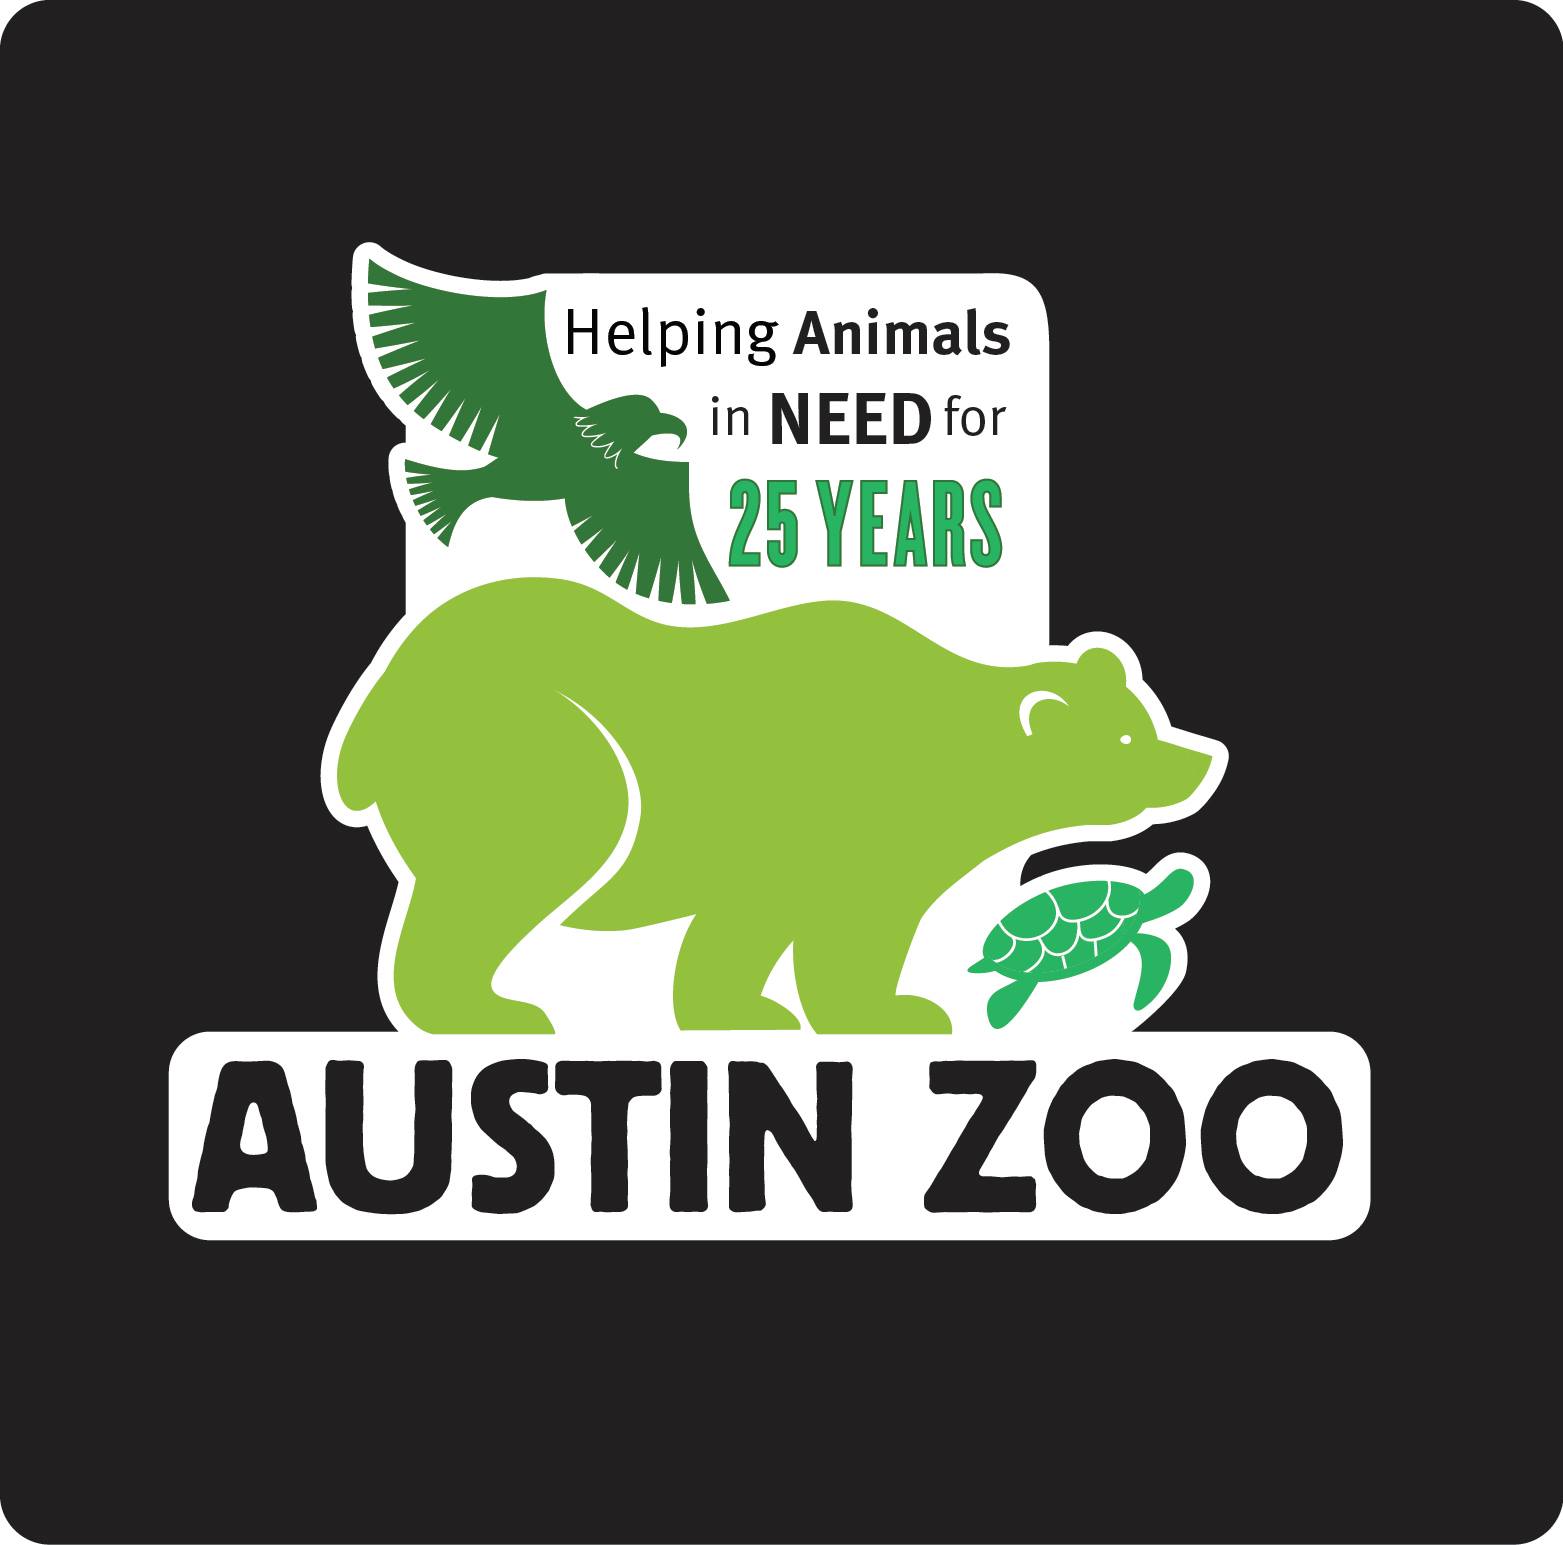 Austin Zoo